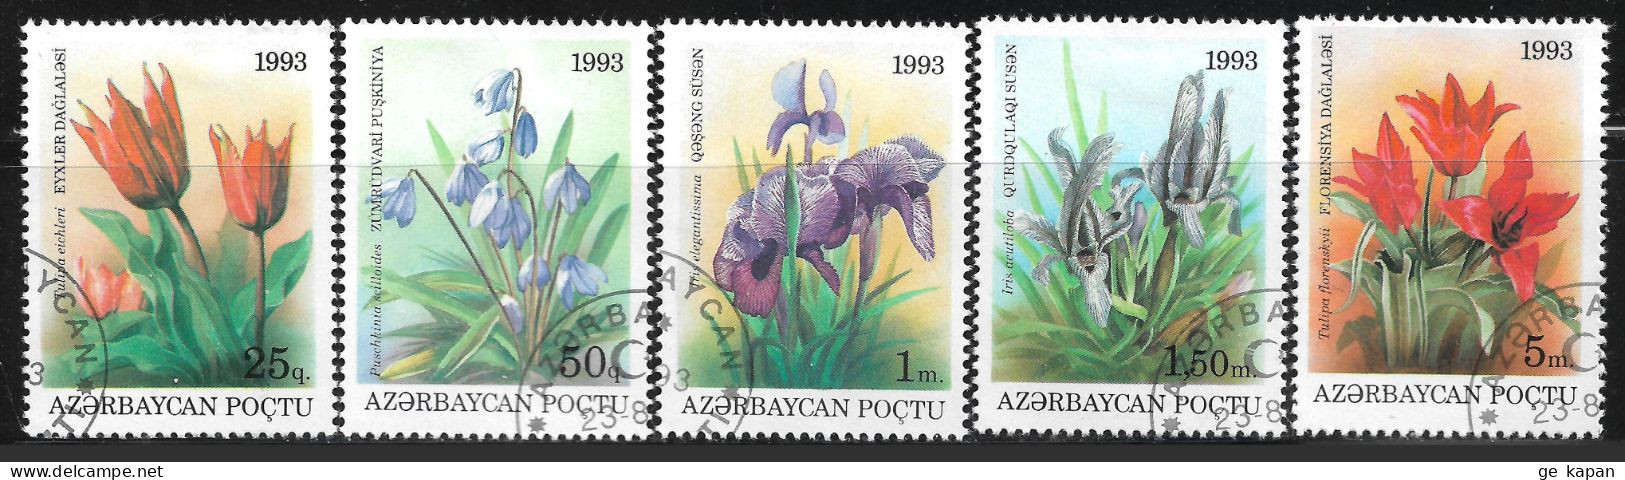 1993 AZERBAJAN Set Of 5 Used STAMPS (Michel # 91-95) - Azerbaïdjan